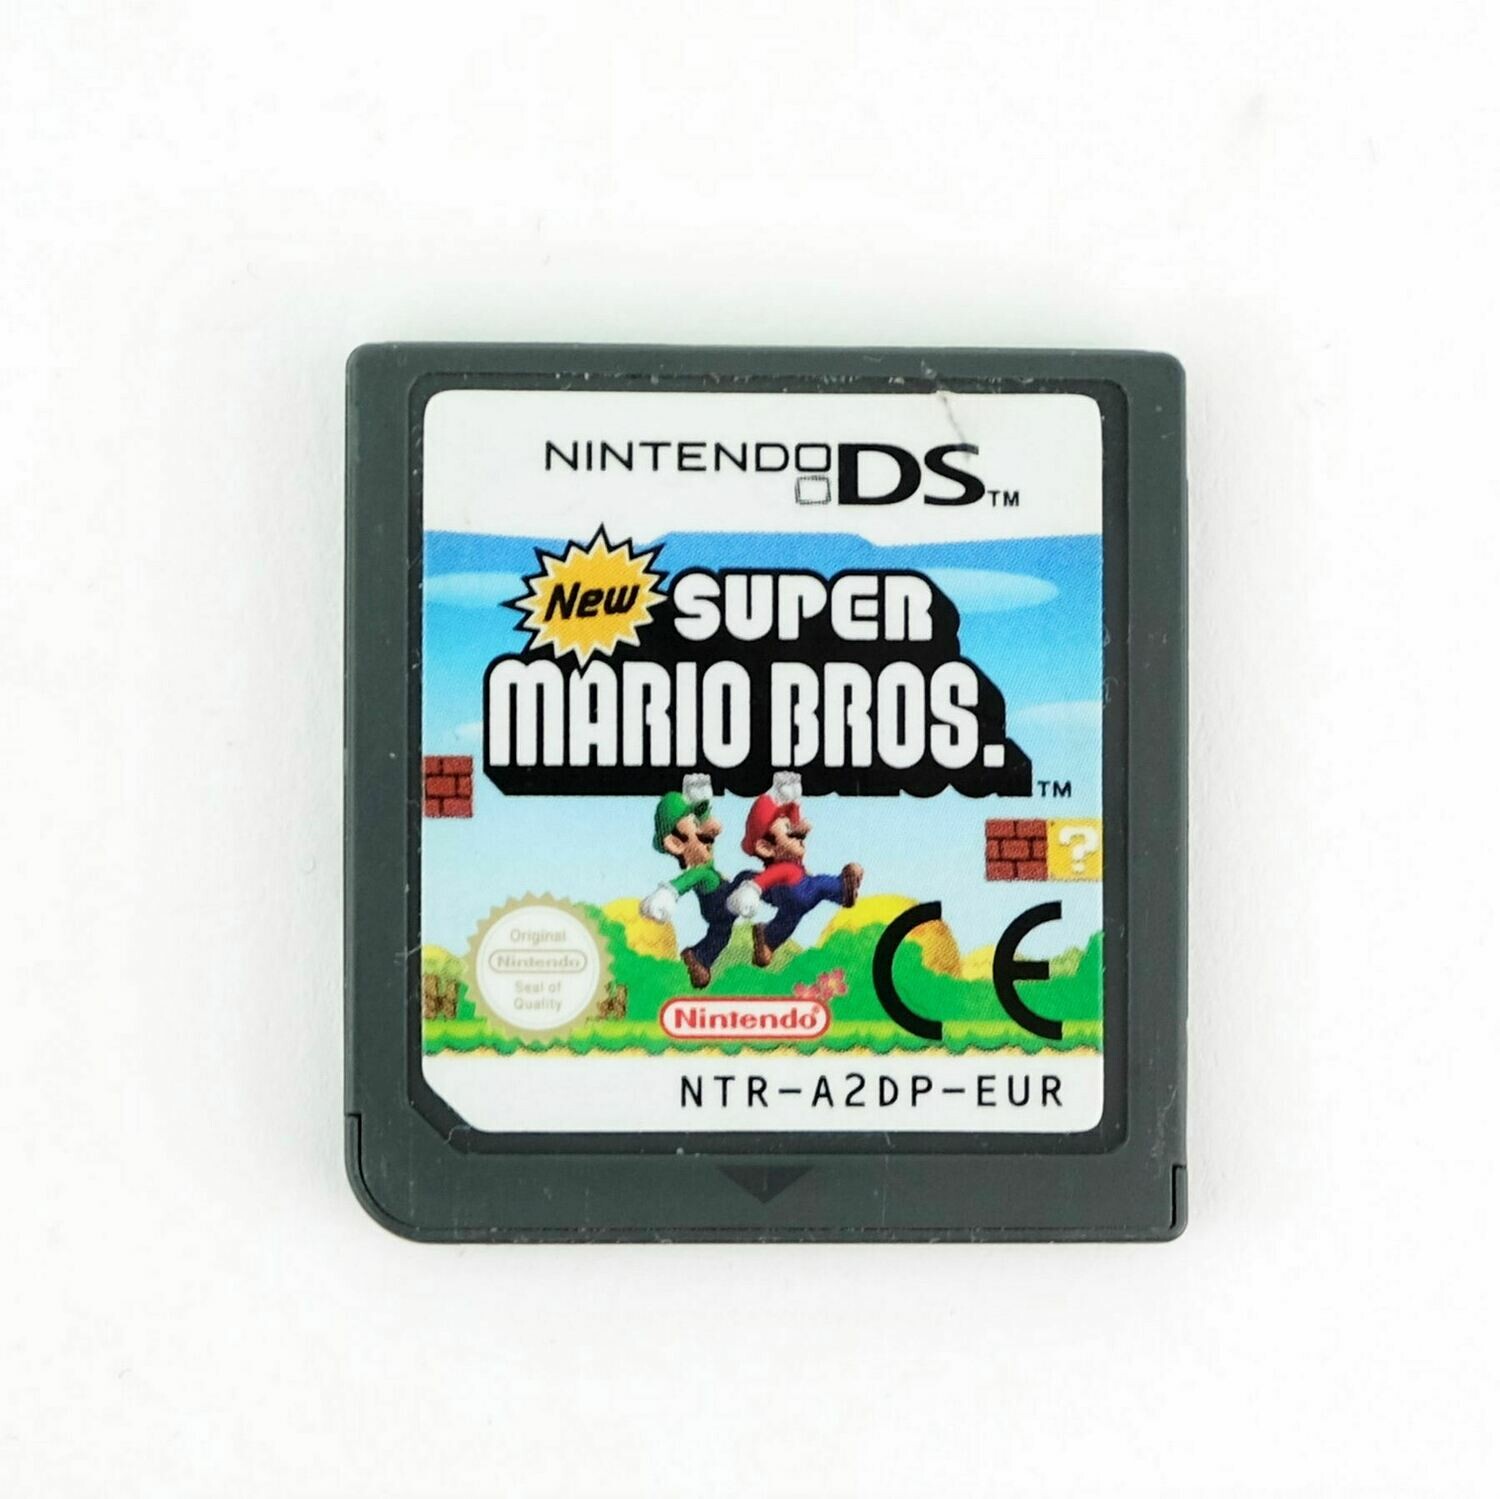 Nintendo Ds New Super Mario Bros Game